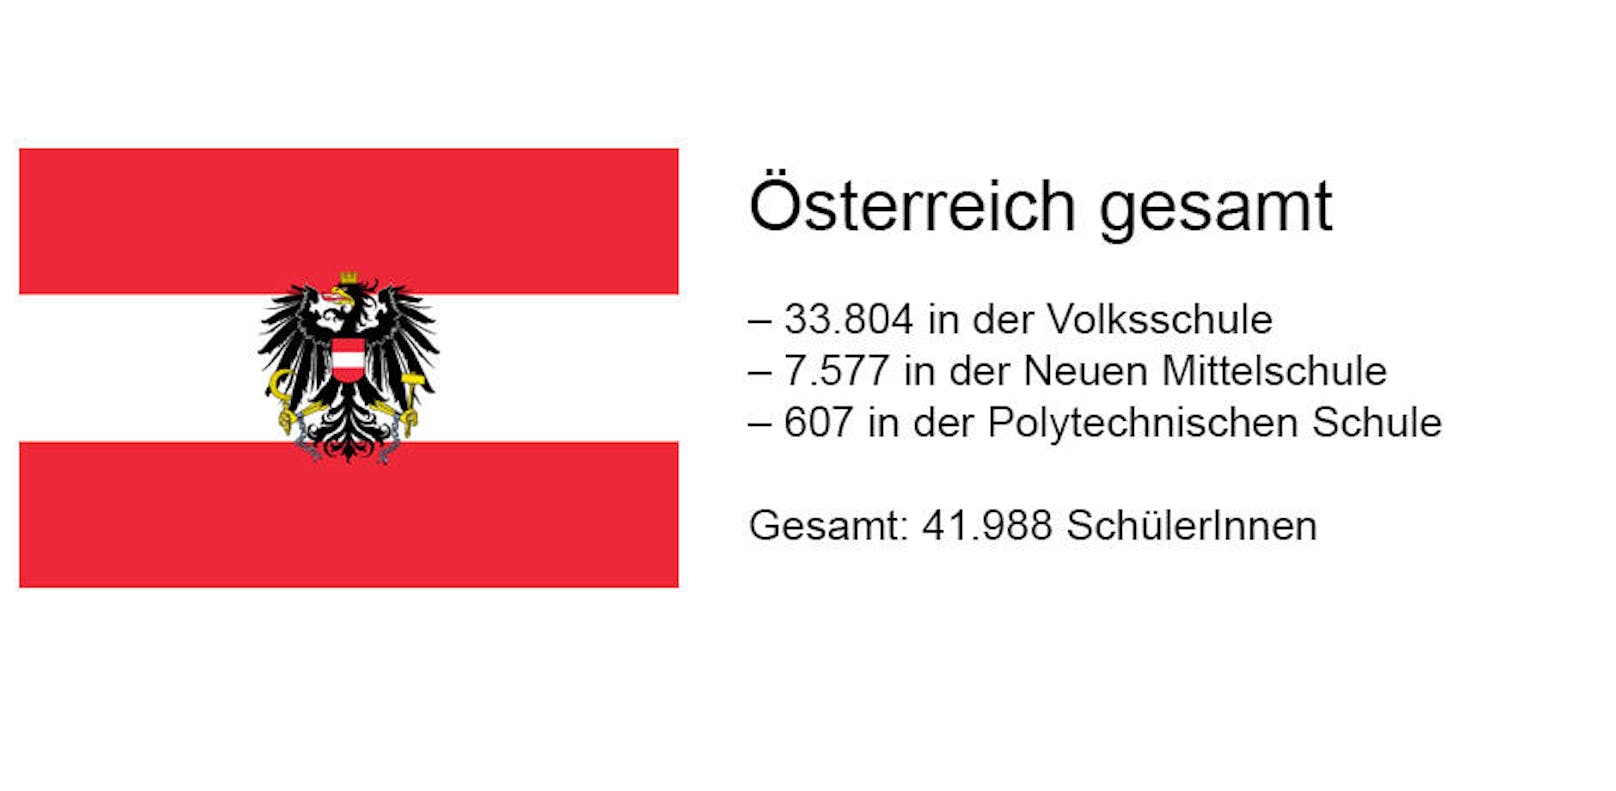 In ganz Österreich sind demnach 1.312 Klassen geplant.